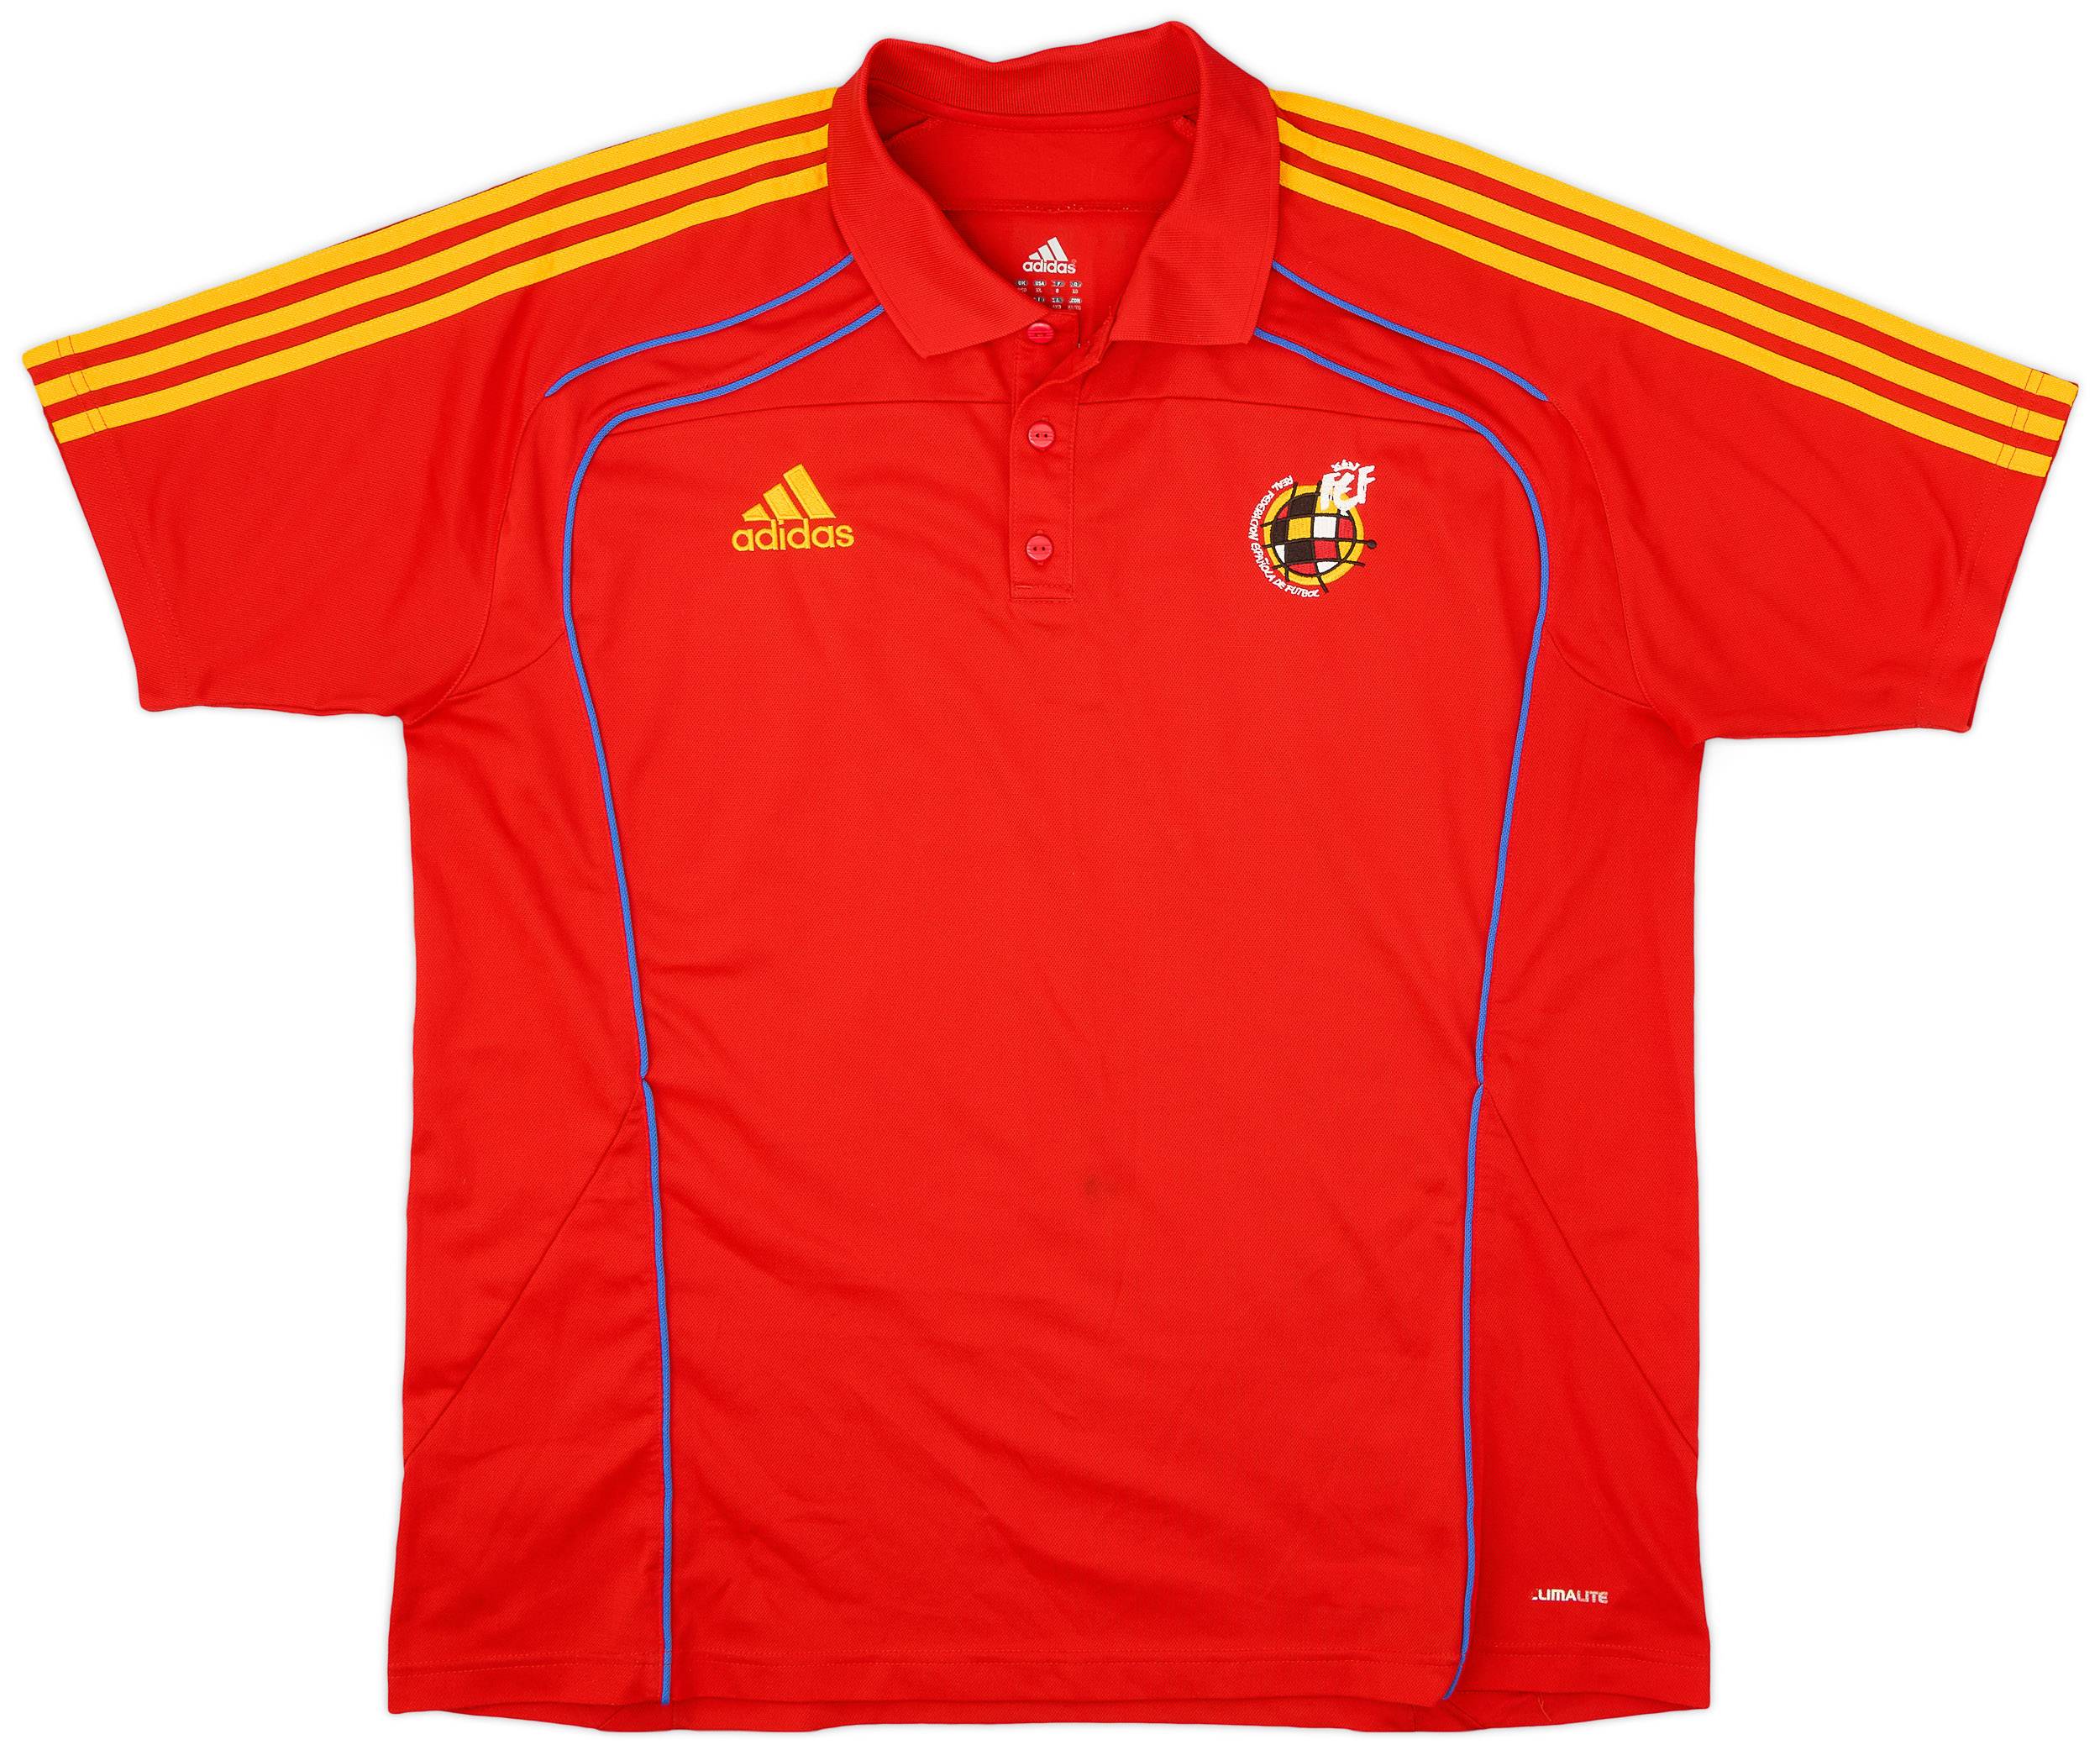 2009-10 Spain adidas Polo Shirt - 9/10 - (XL)